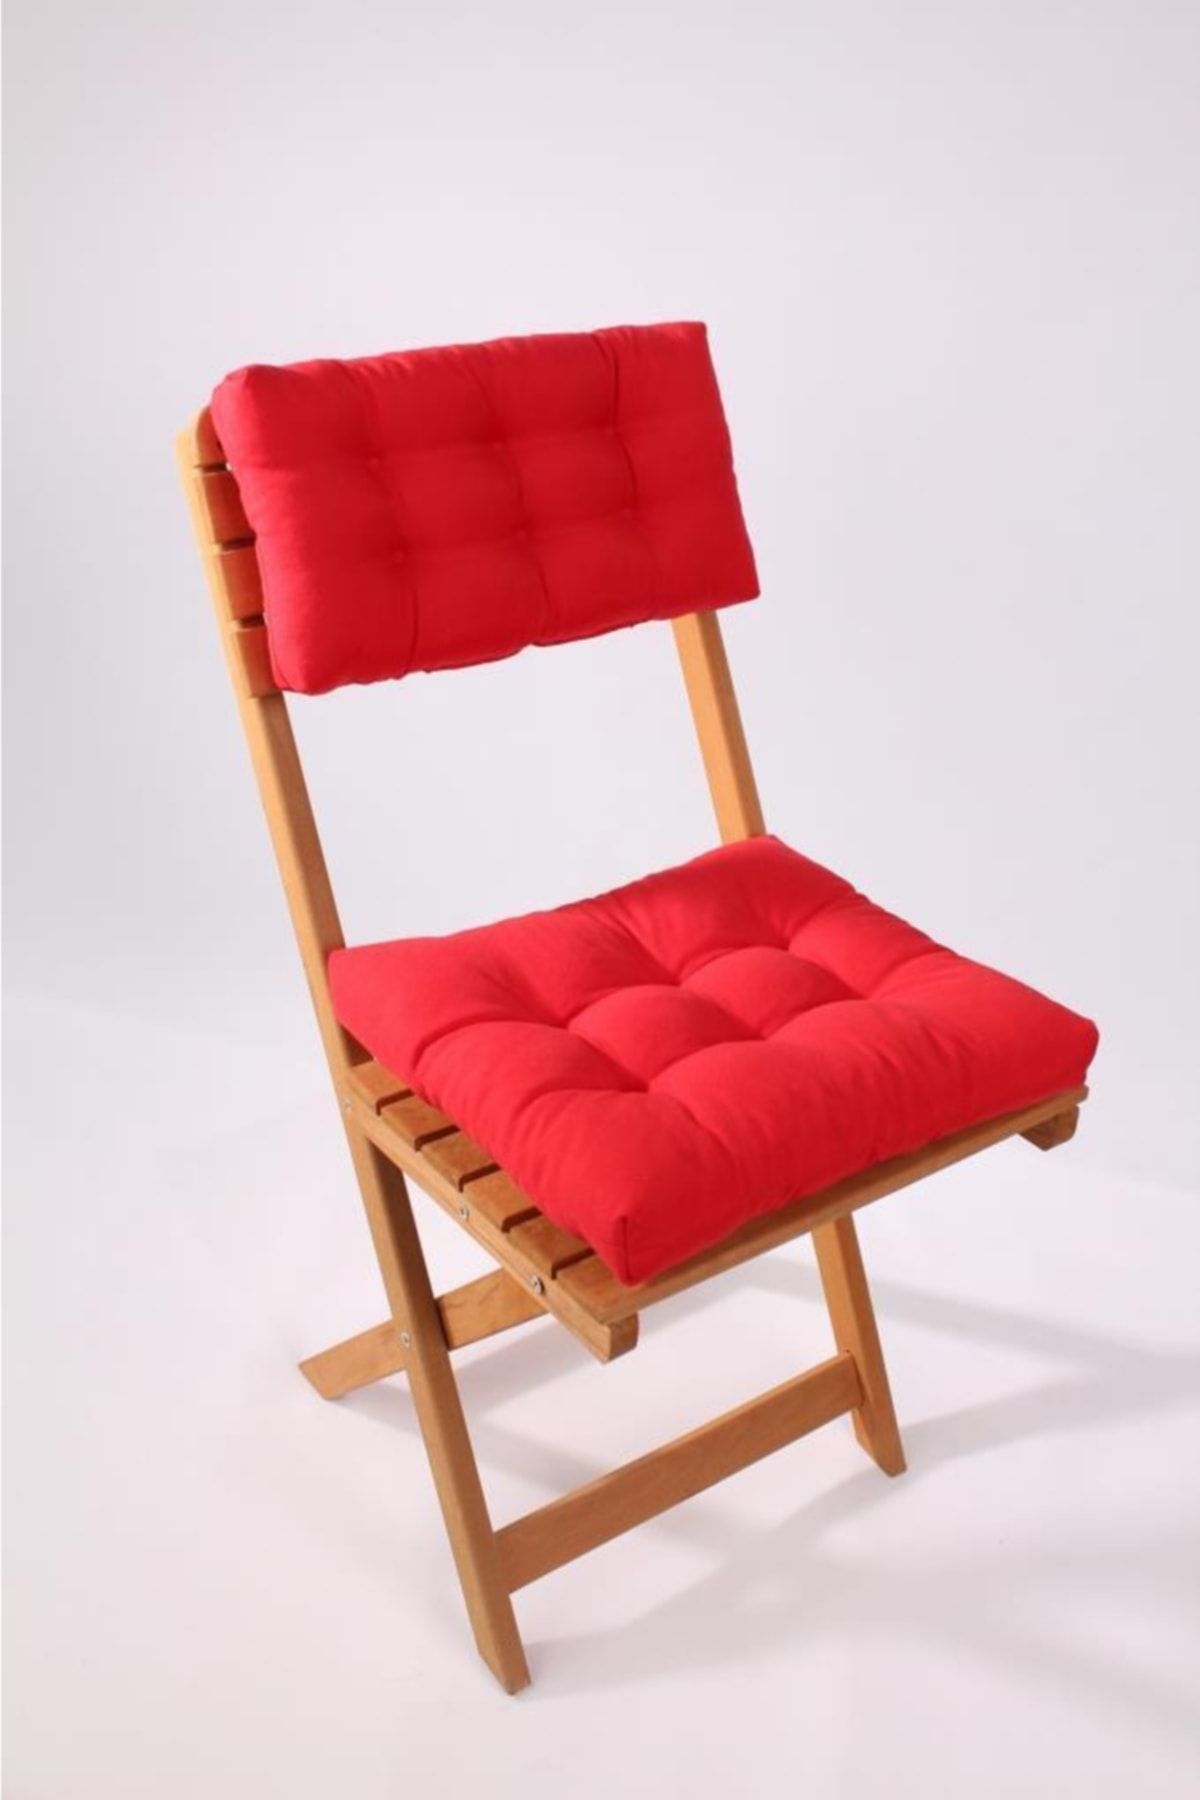 ALTINPAMUK Lüx Bistro Mutfak Bahçe Sandalye Minderi Sırtlıklı Kırmızı (MİNDER VE SIRT MİNDERİ)